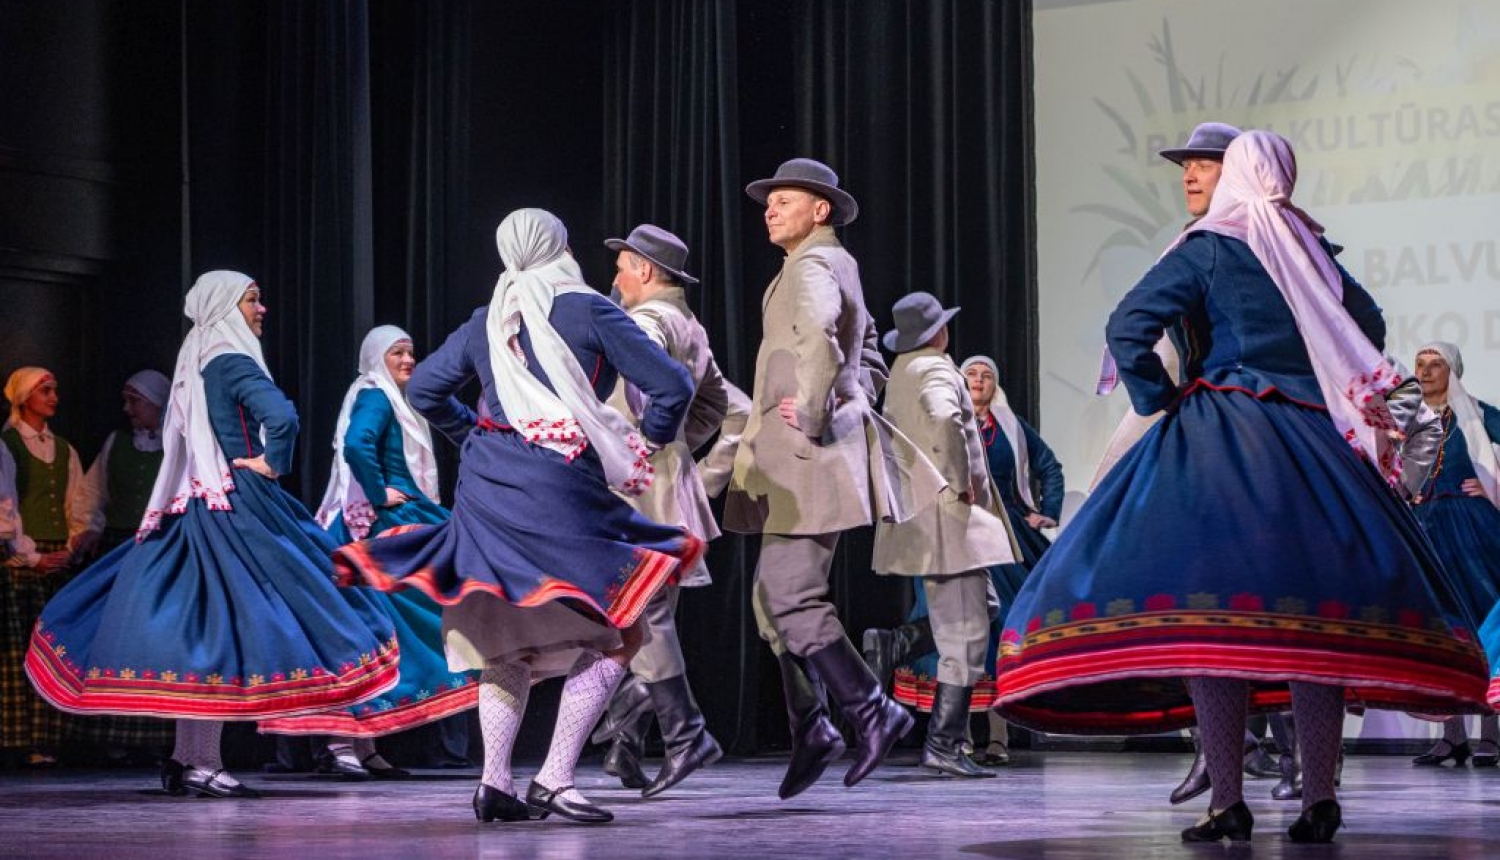 Aizvadīta Balvu novada tautisko deju kolektīvu skate– koncerts 